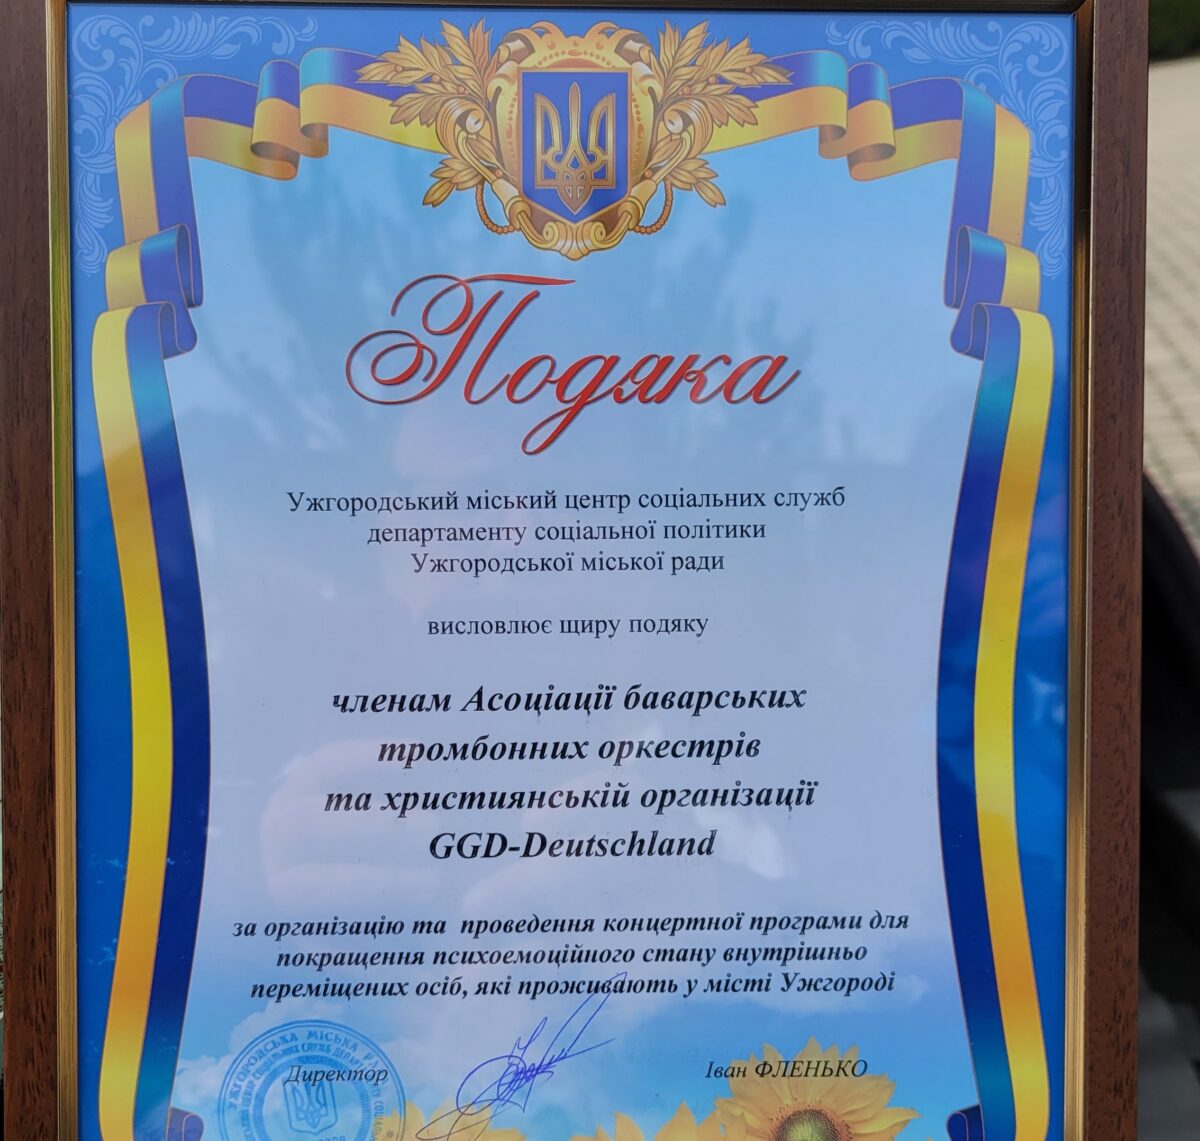 Die Stadt Uschgorod stellte den Musikern als kleine Anerkennung eine Urkunde aus. Foto:  Susanne Kropf